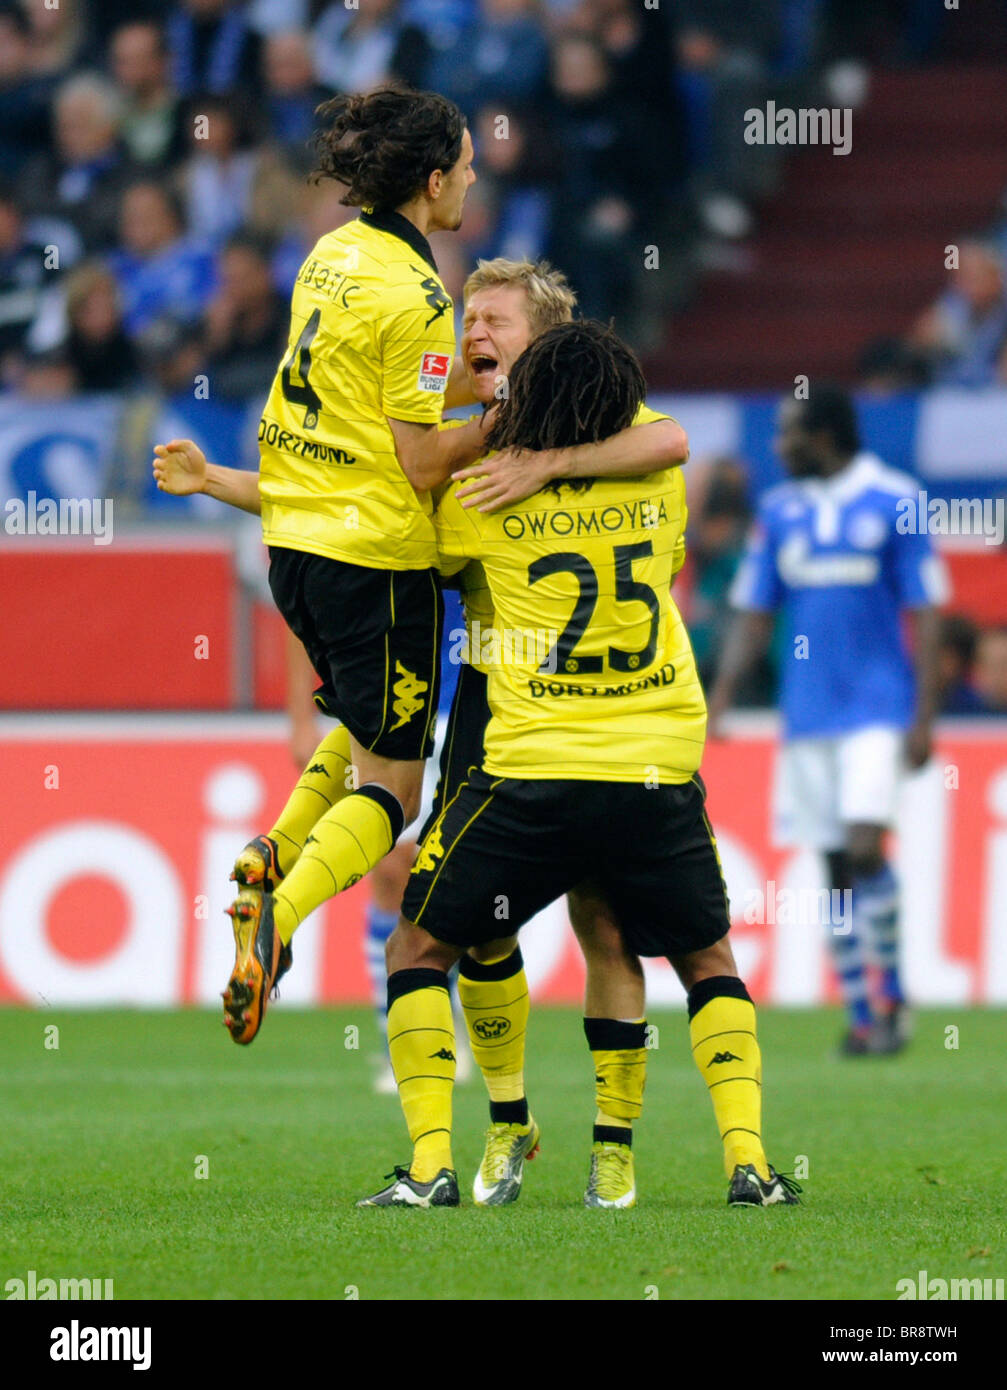 Dortmund player Neven Subotic, Jakub Kuba Blaszczykowski and Patrick Owomoyela (from left), celebrating a goal. Stock Photo